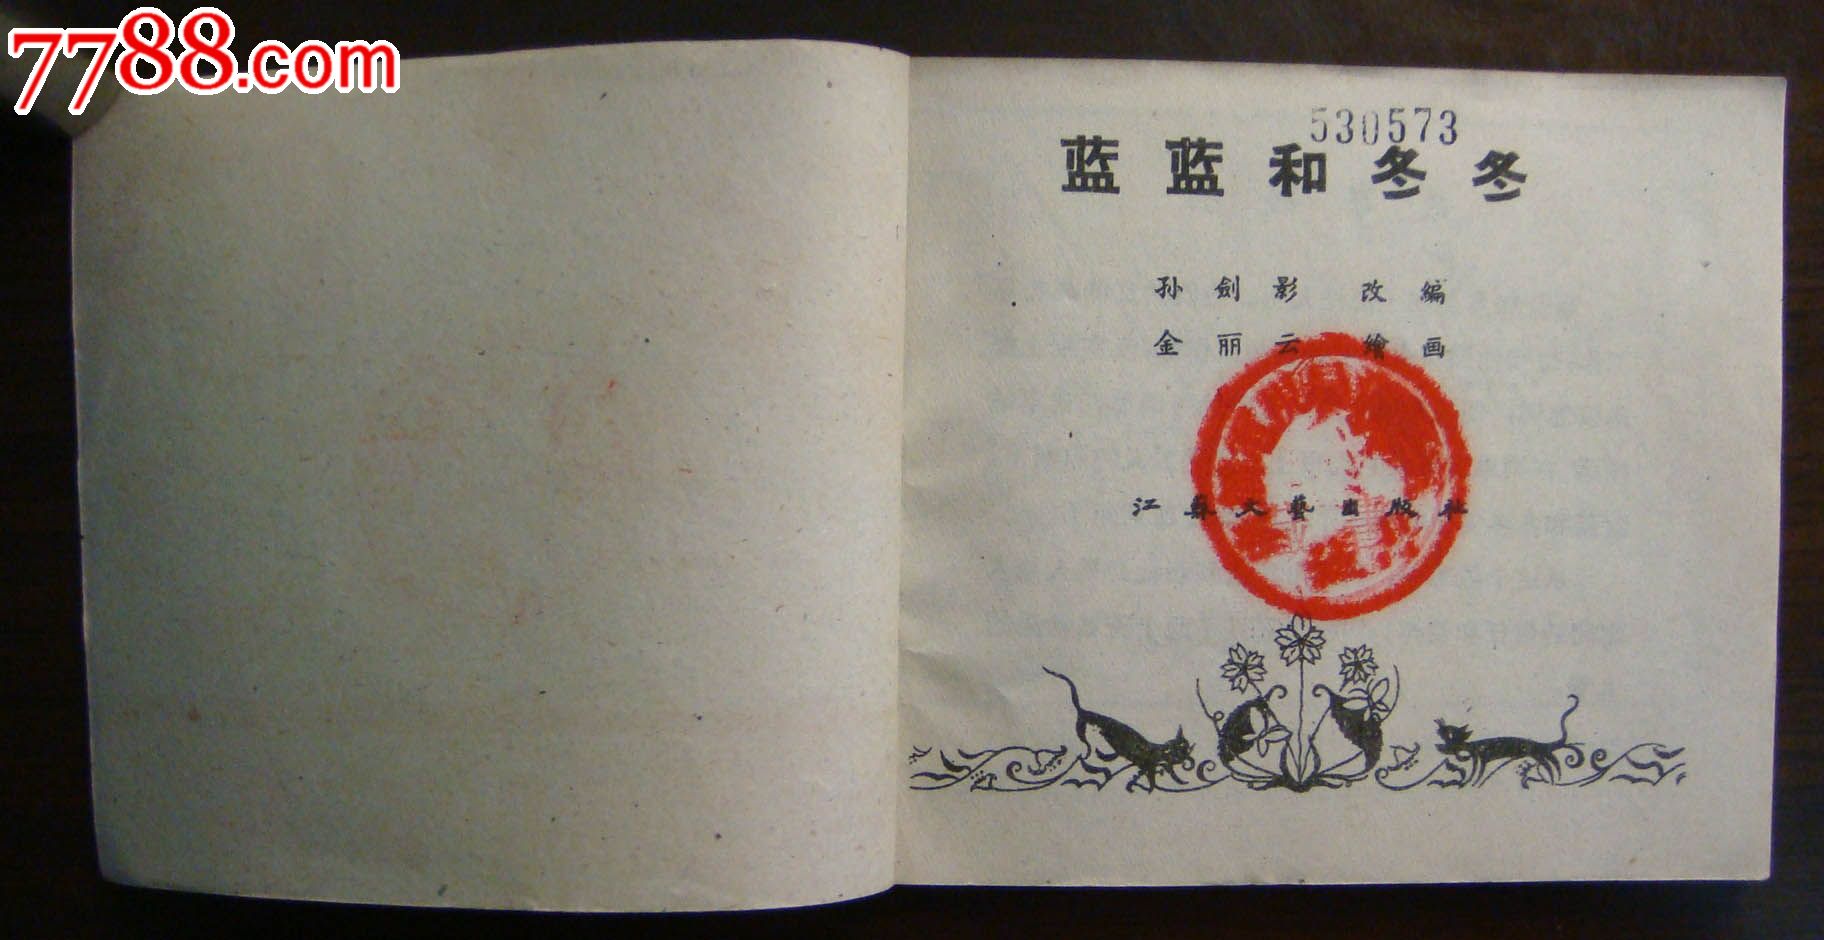 兰兰和冬冬,连环画\/小人书,五十年代(20世纪),绘